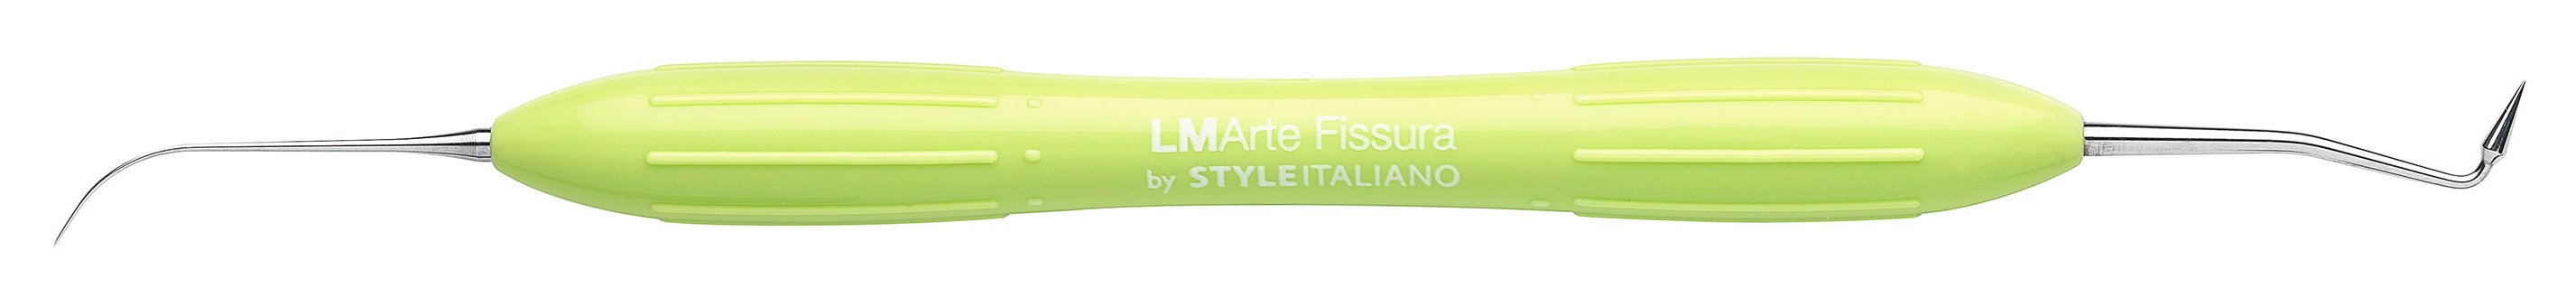 Гладилка Arte Fissura LM 481-487 XSI 1 шт